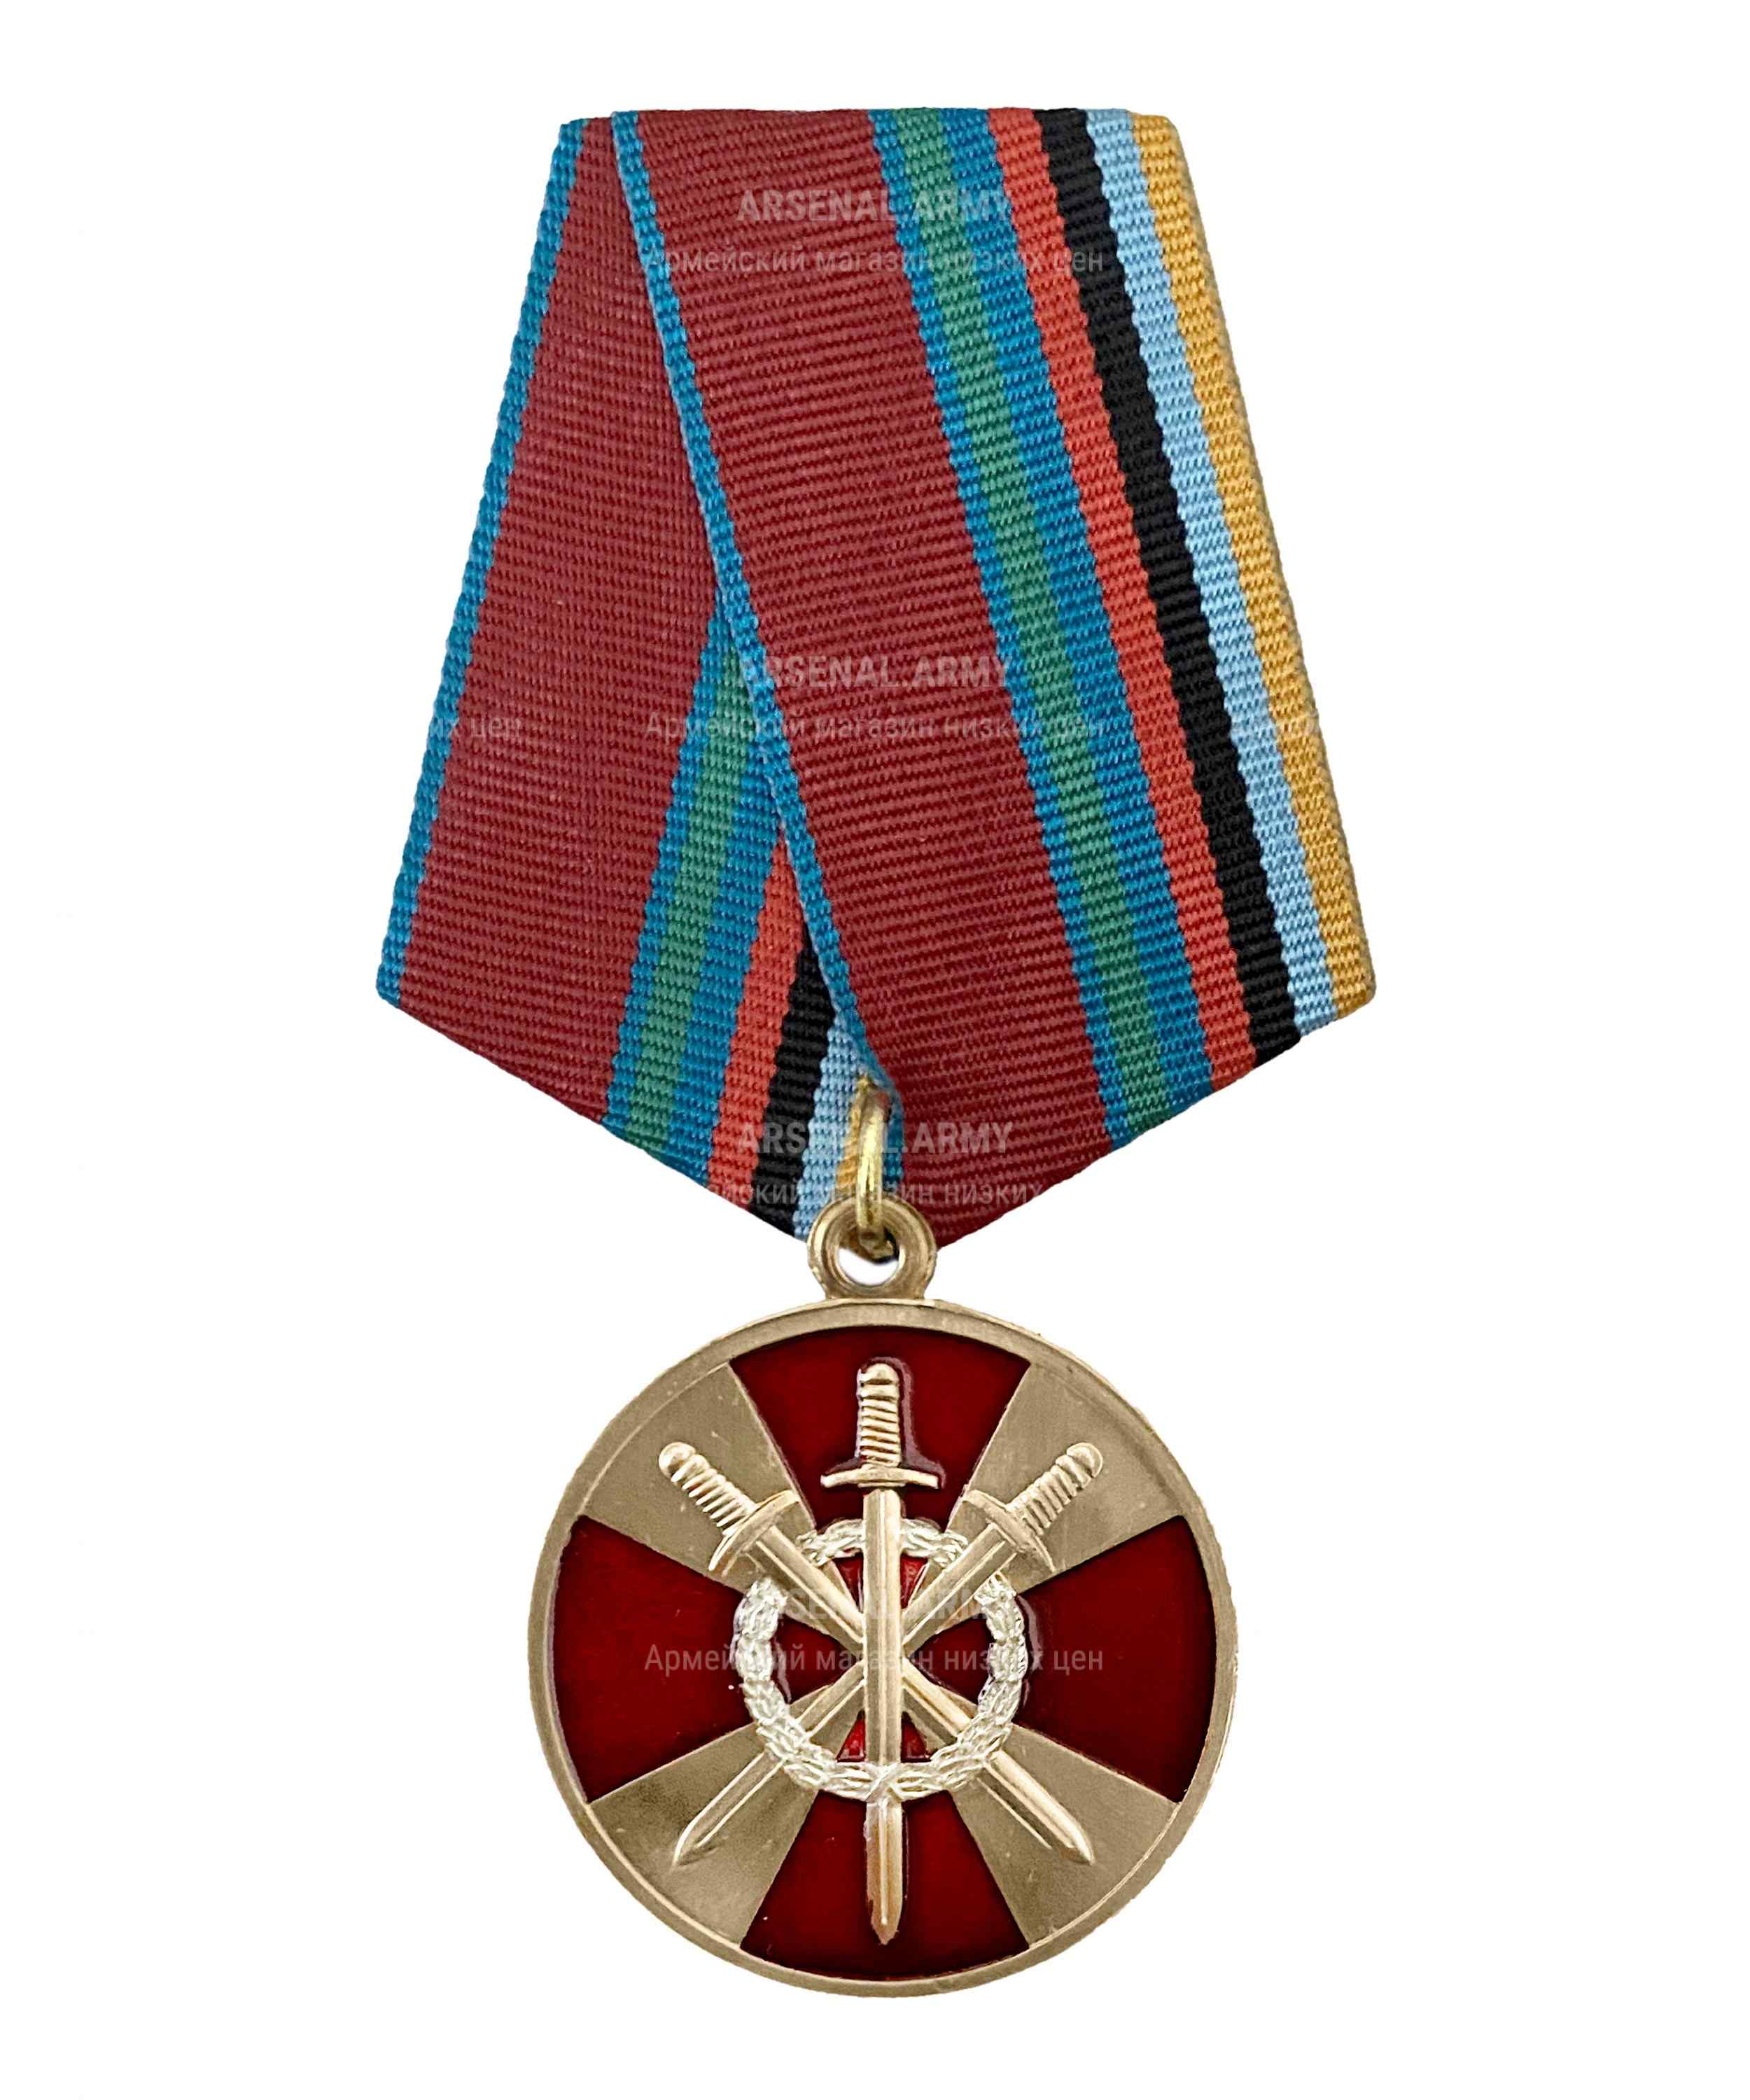 Медаль росгвардии "За боевое содружество" — 1